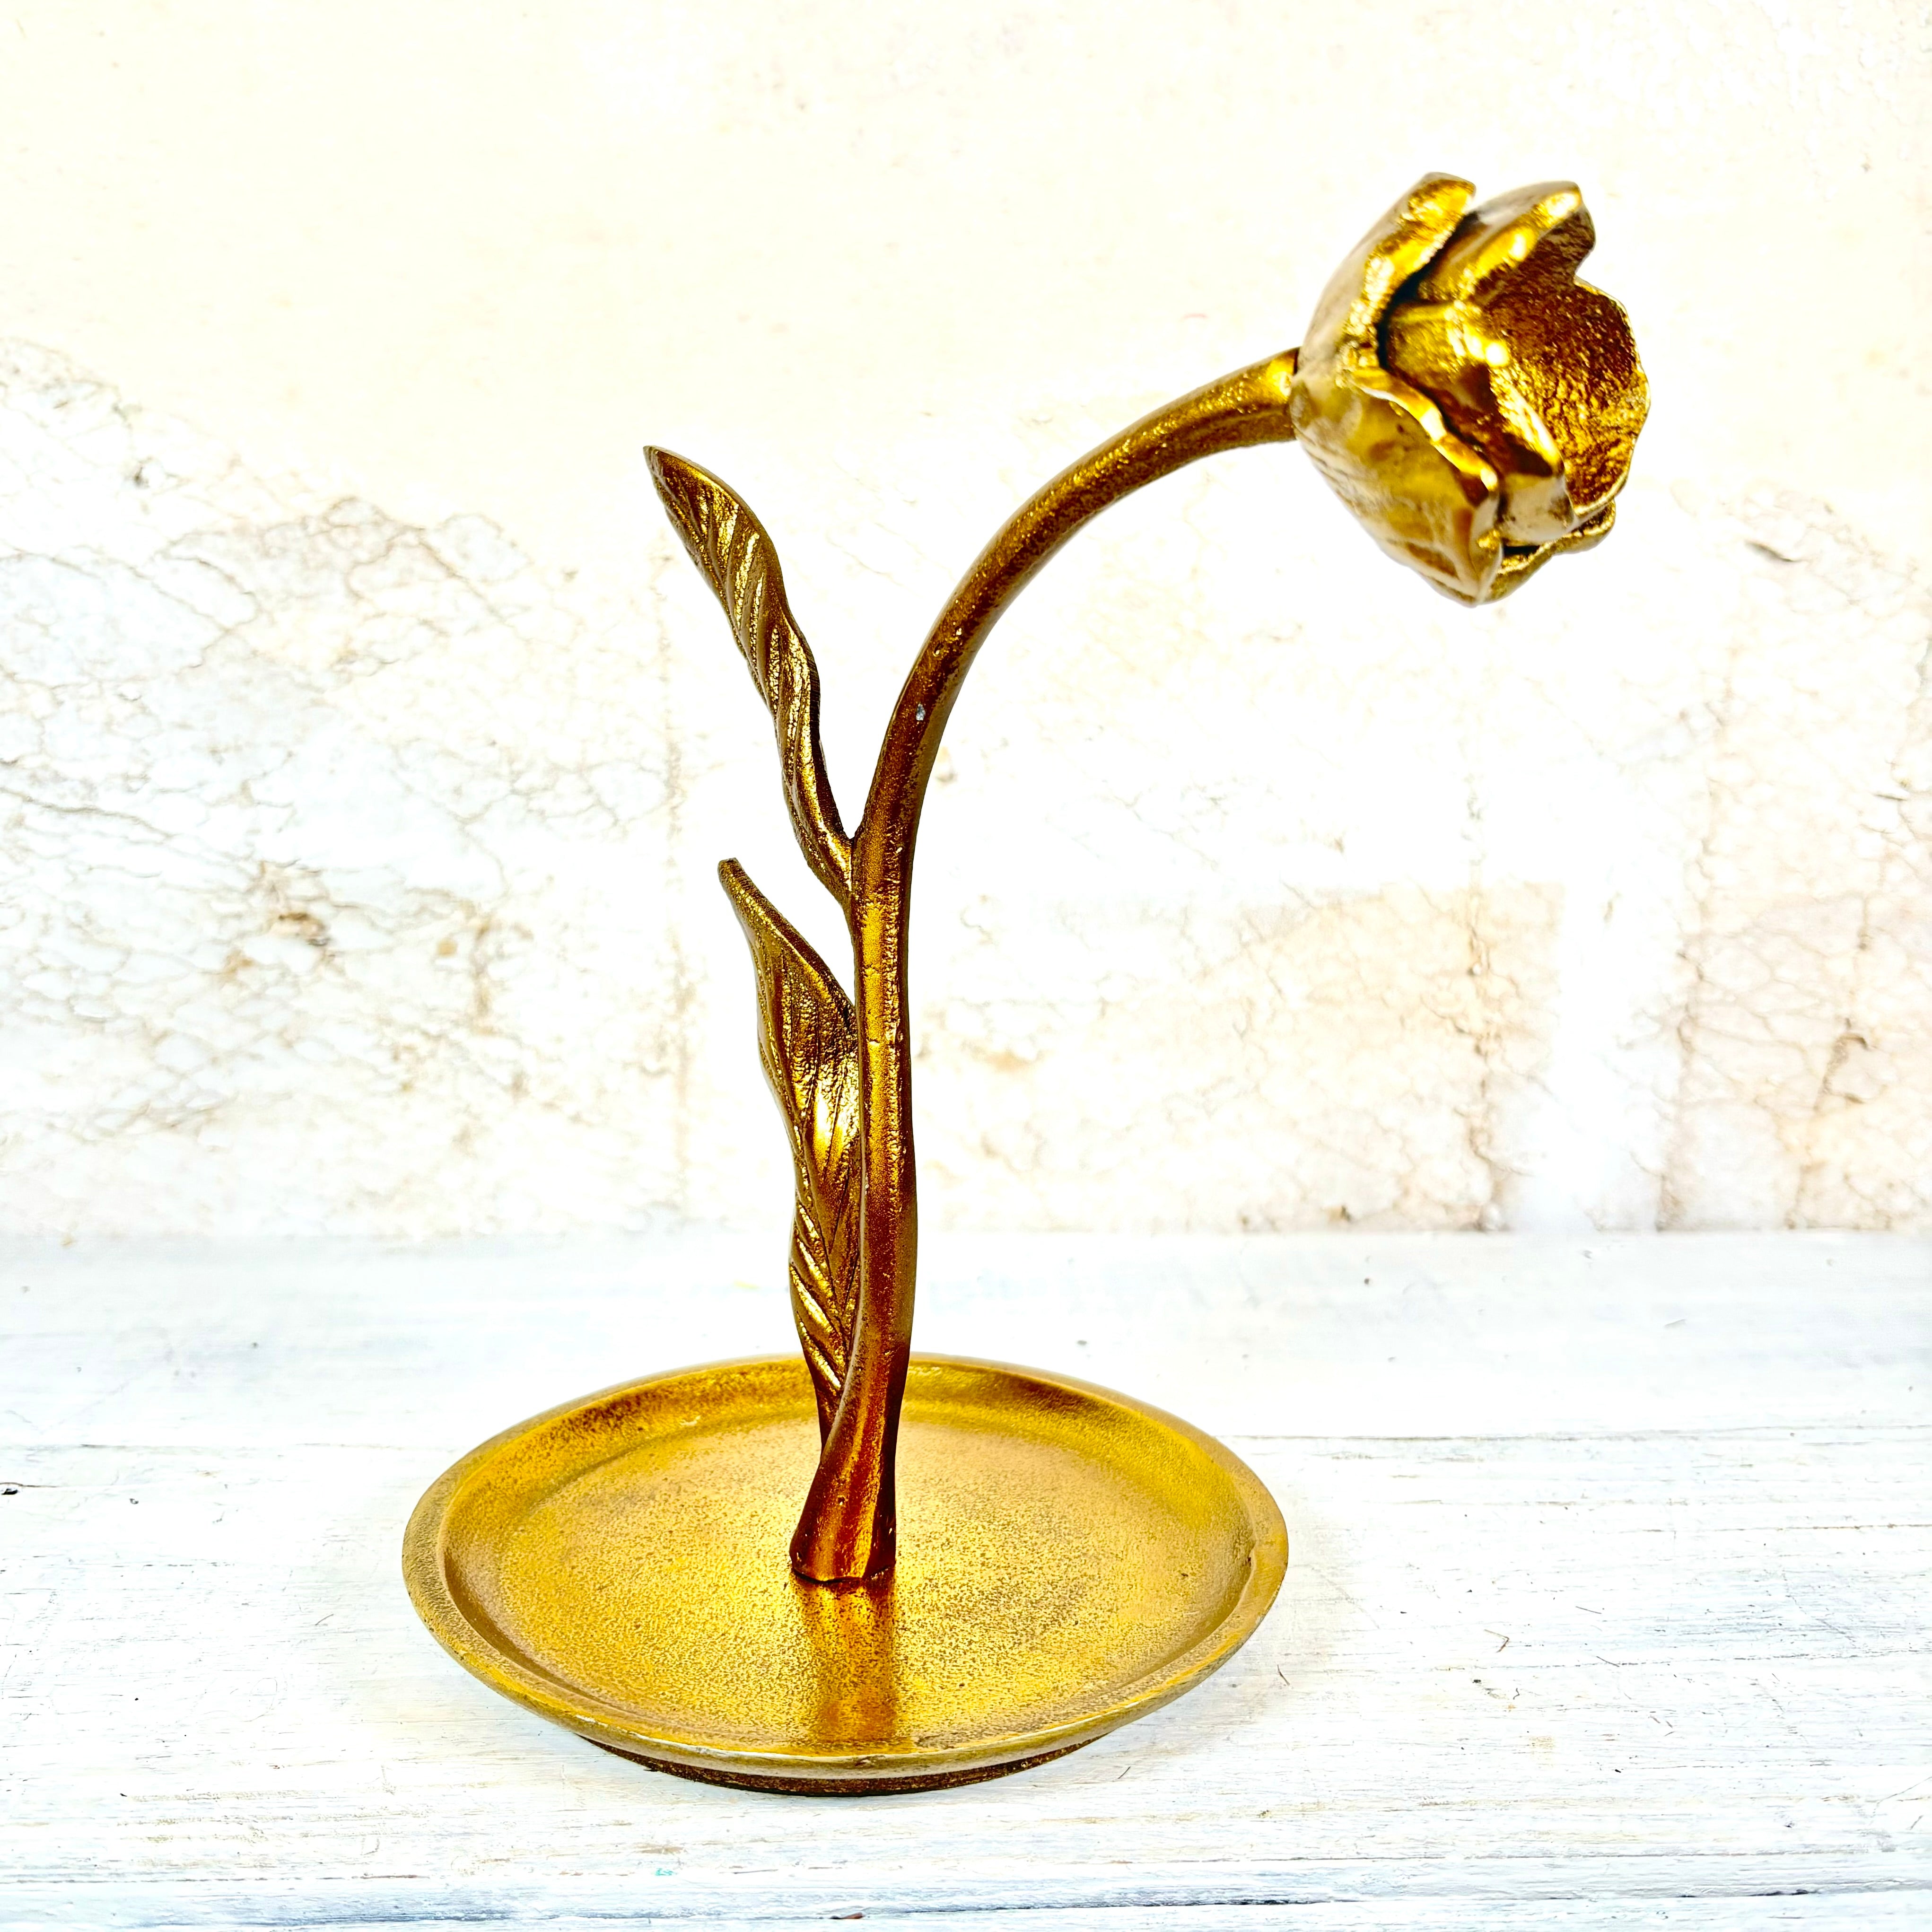 Craning Tulip Brass Sculpture